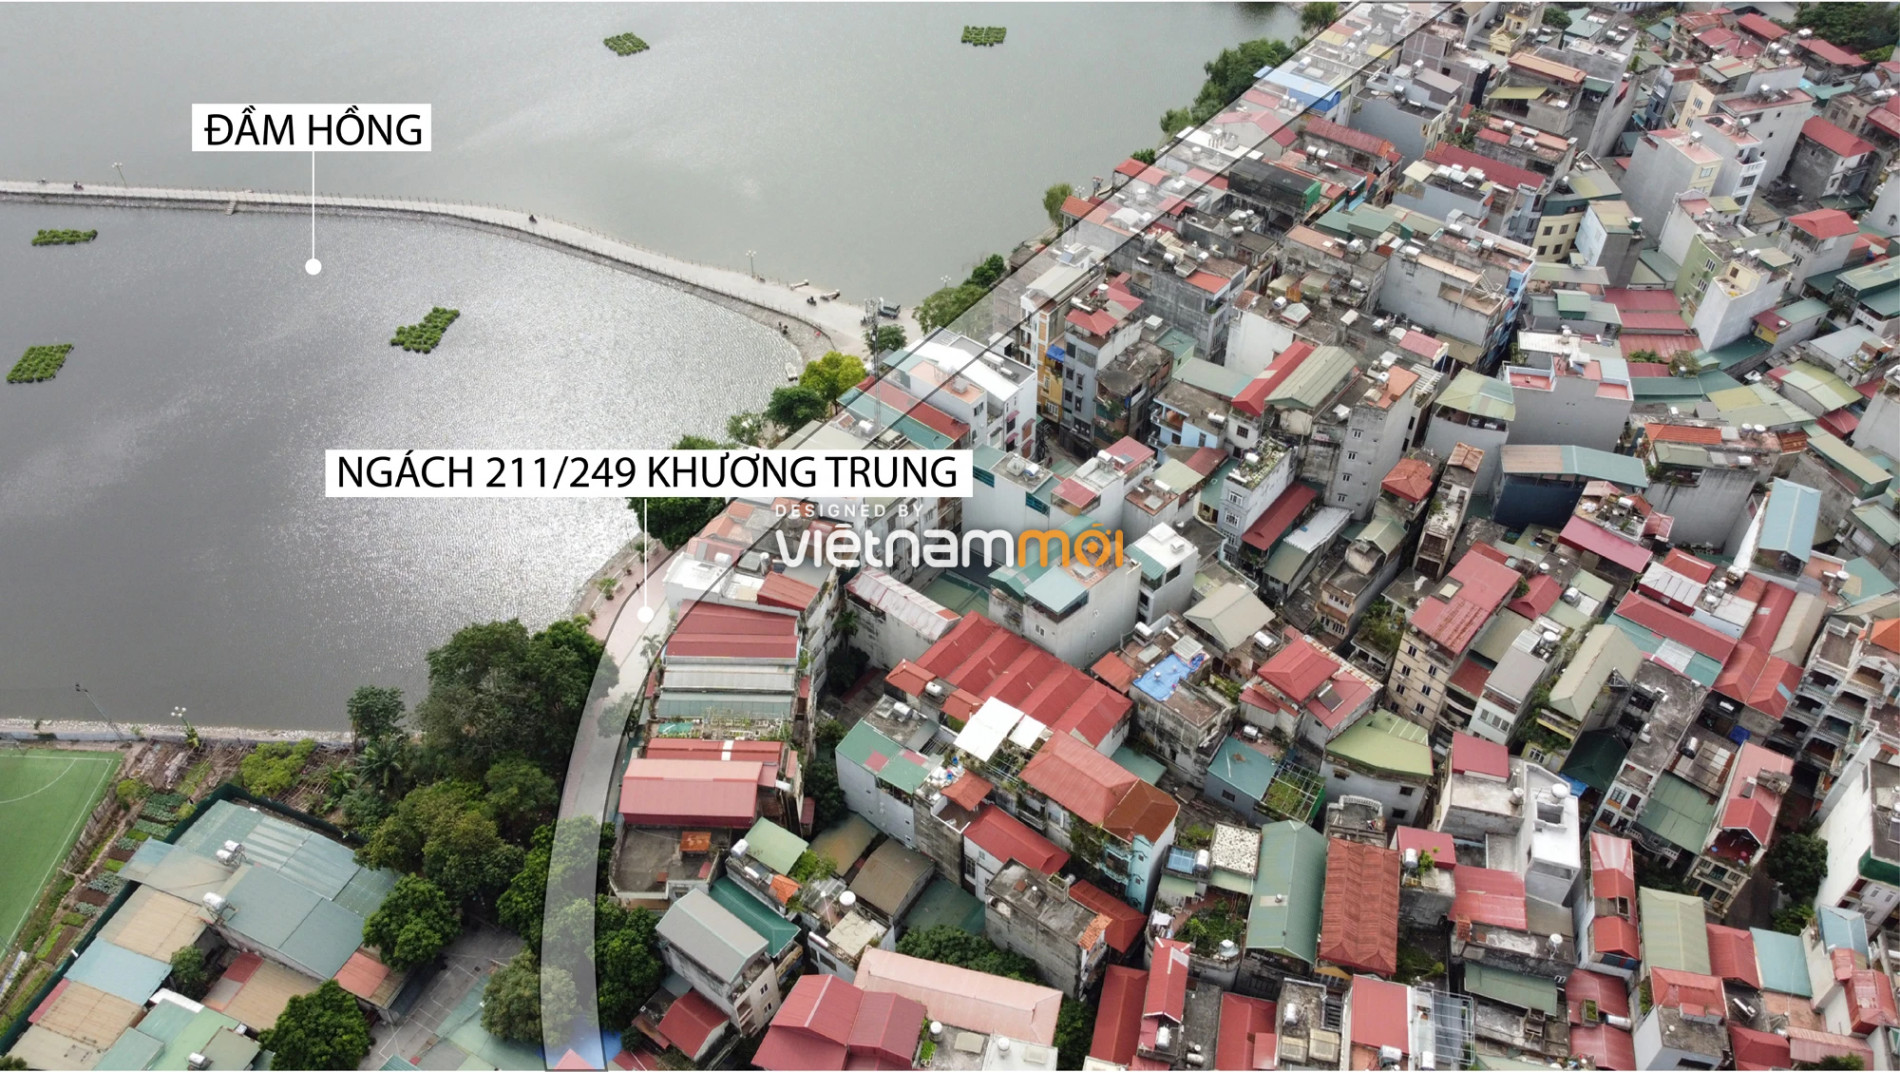 Toàn cảnh dự án đường Tôn Thất Tùng kéo dài đang được Hà Nội rà soát - Ảnh 5.